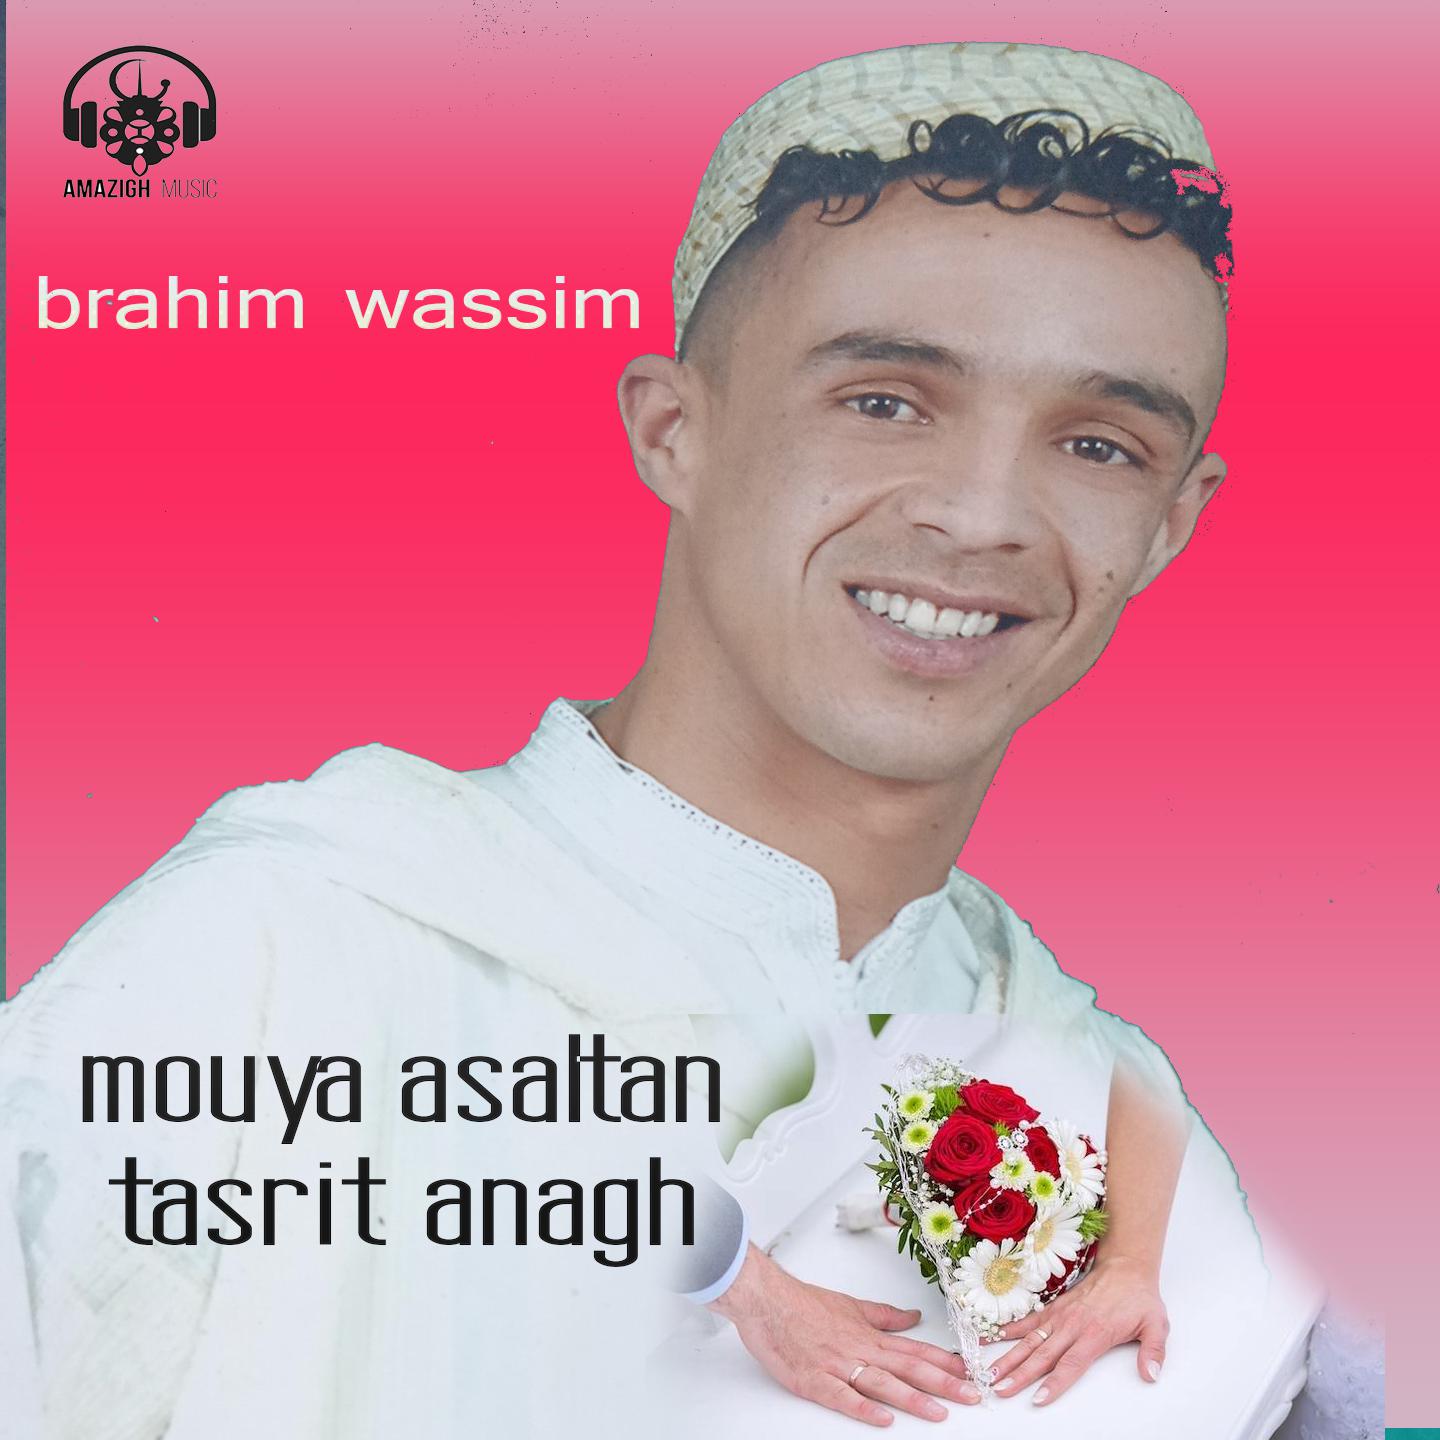 Brahim Wassim - Tasrit atkhadant oudmam